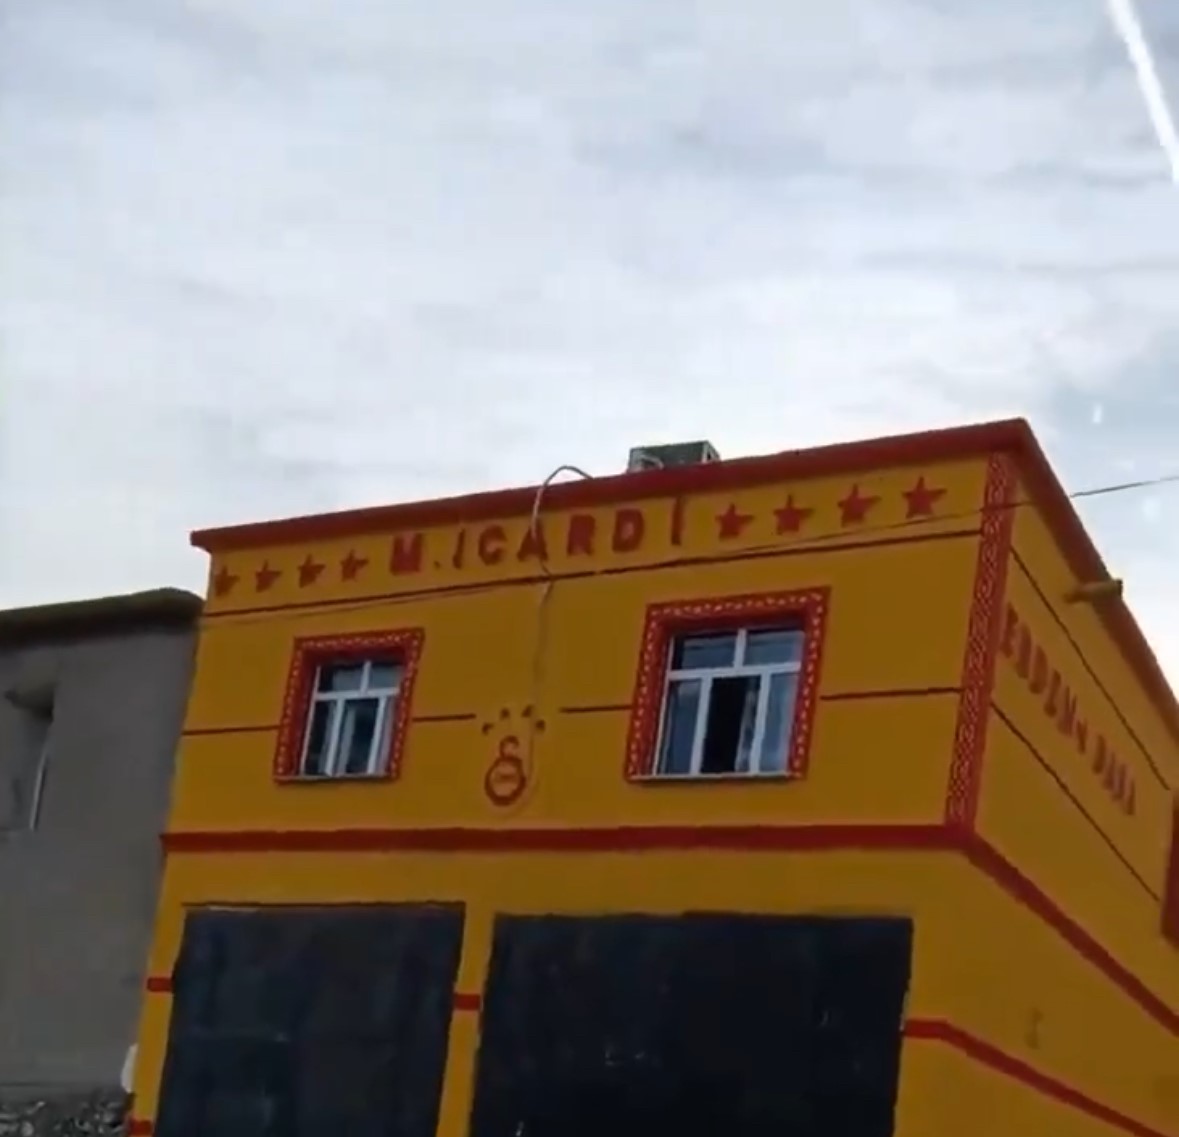 Diyarbakır'da yaşayan Galatasaray taraftarının "Icardi" tutkusu!